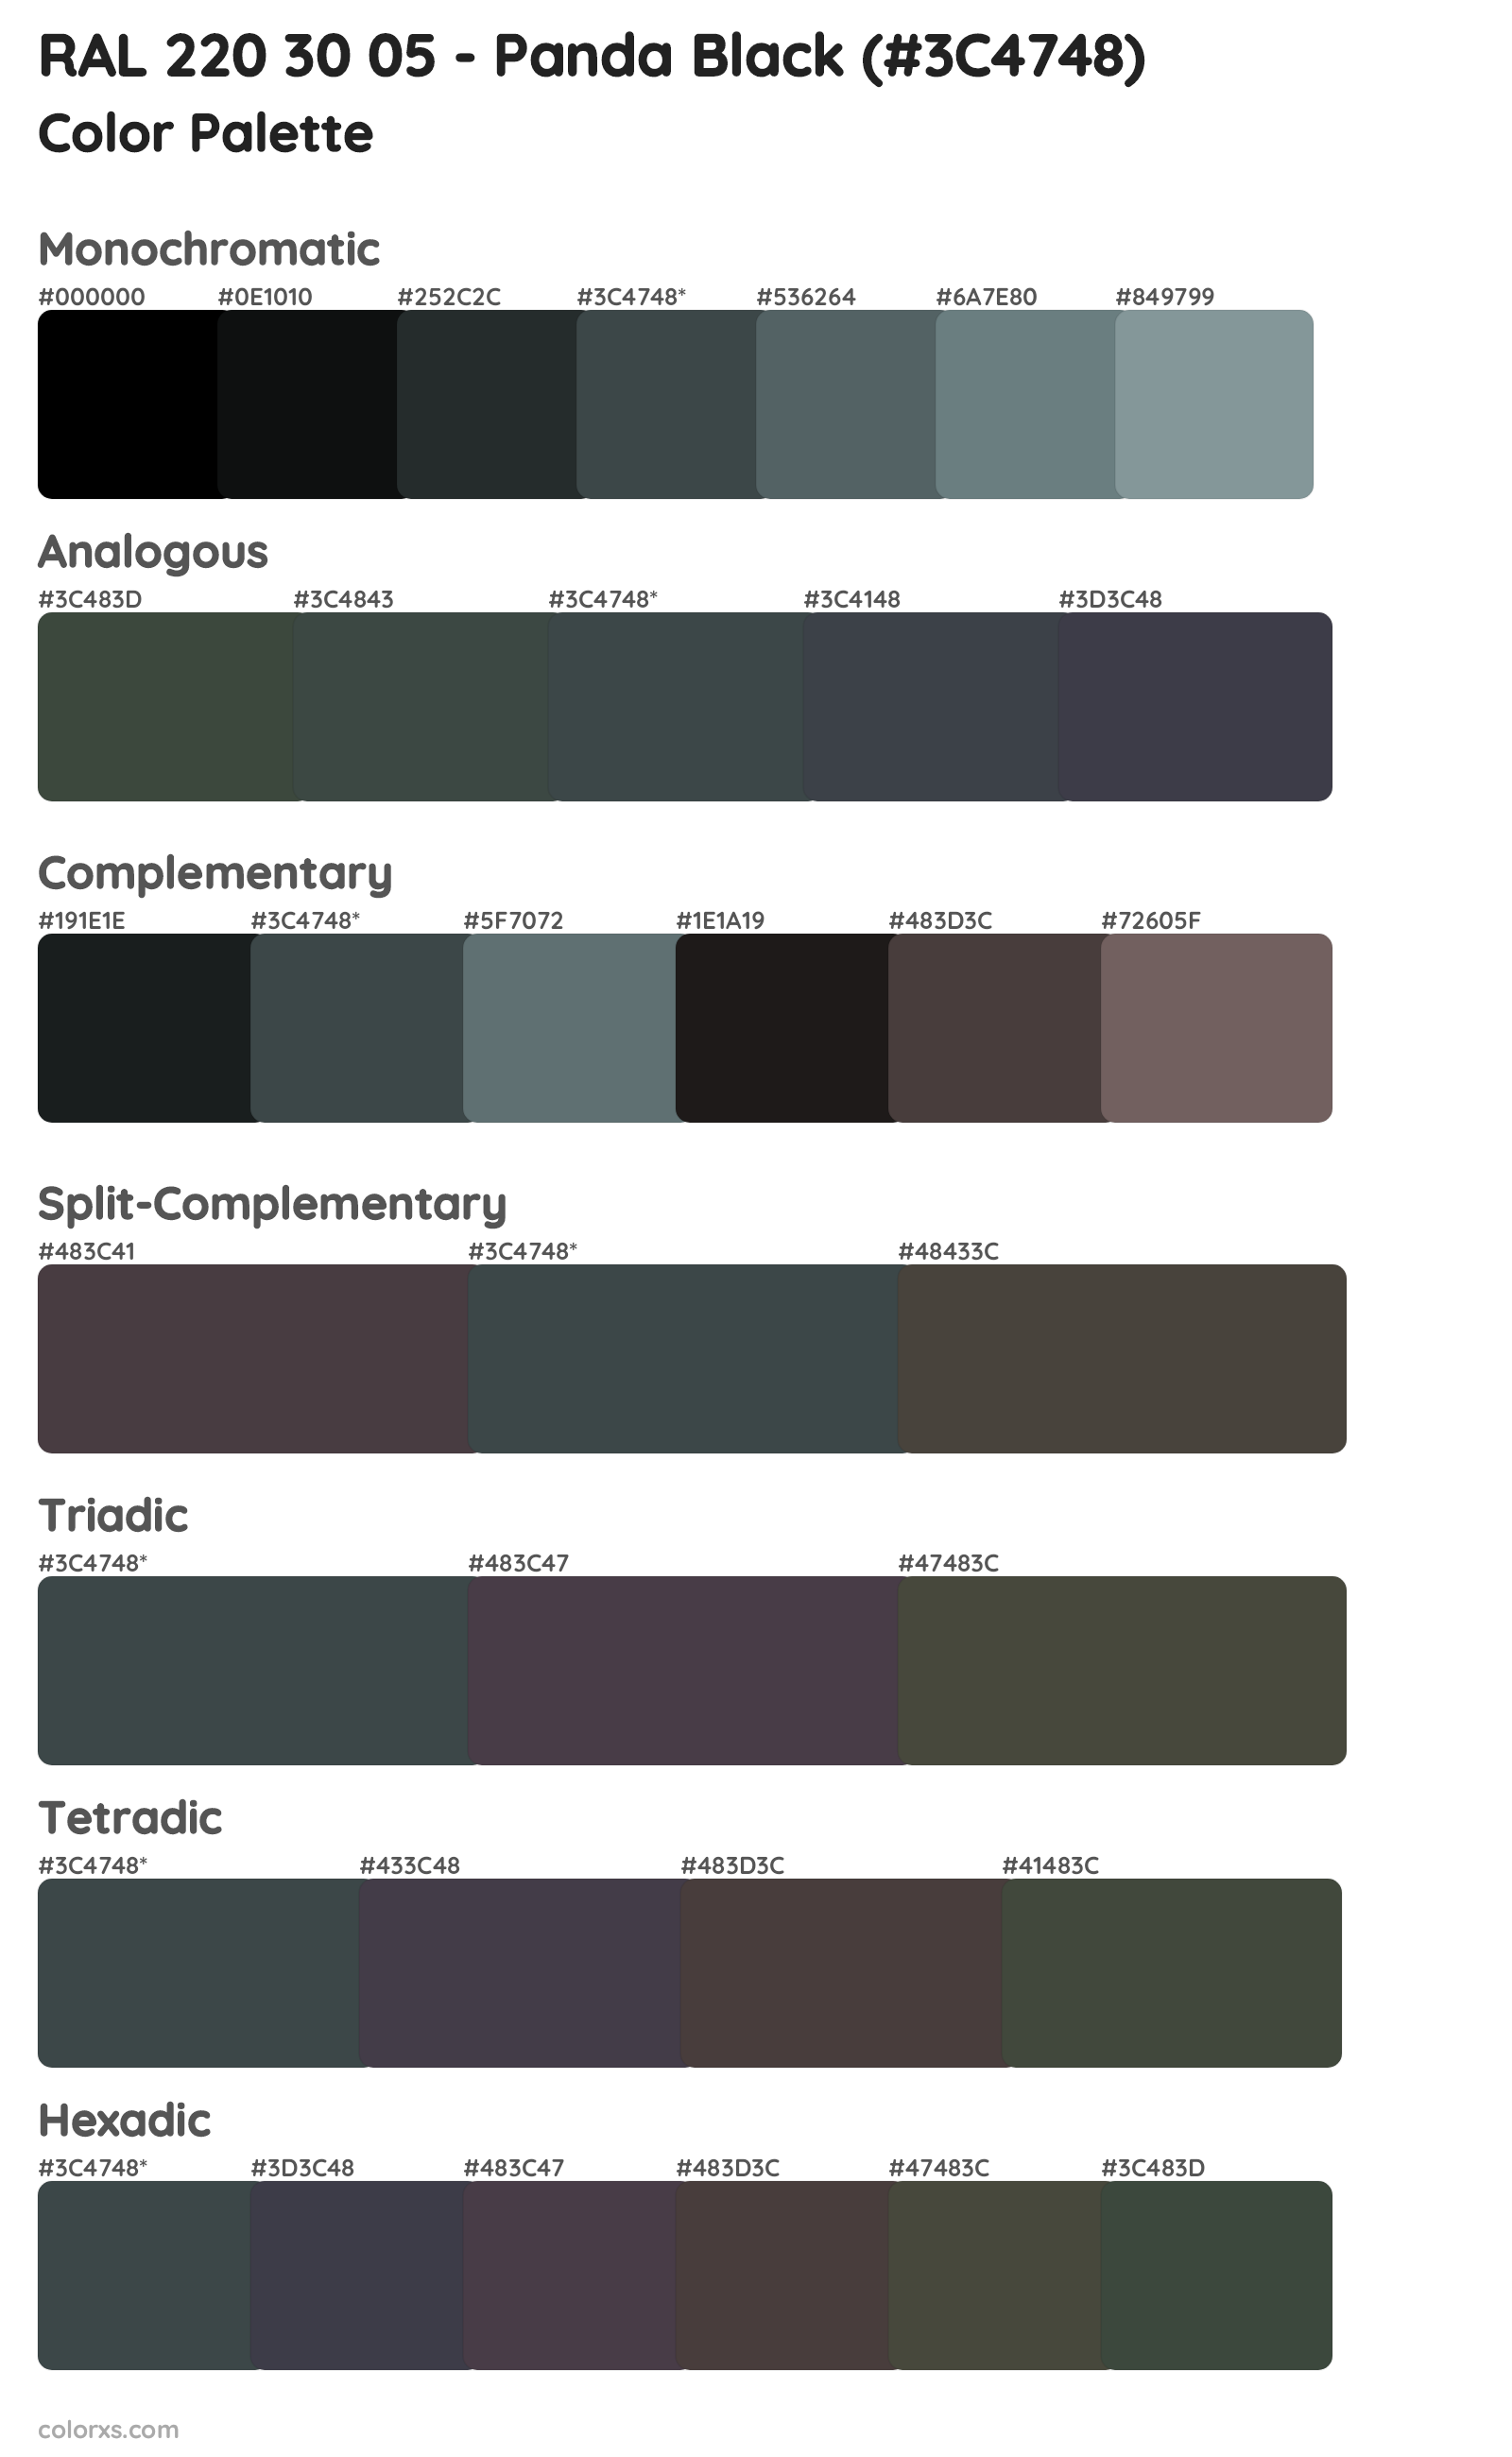 RAL 220 30 05 - Panda Black Color Scheme Palettes